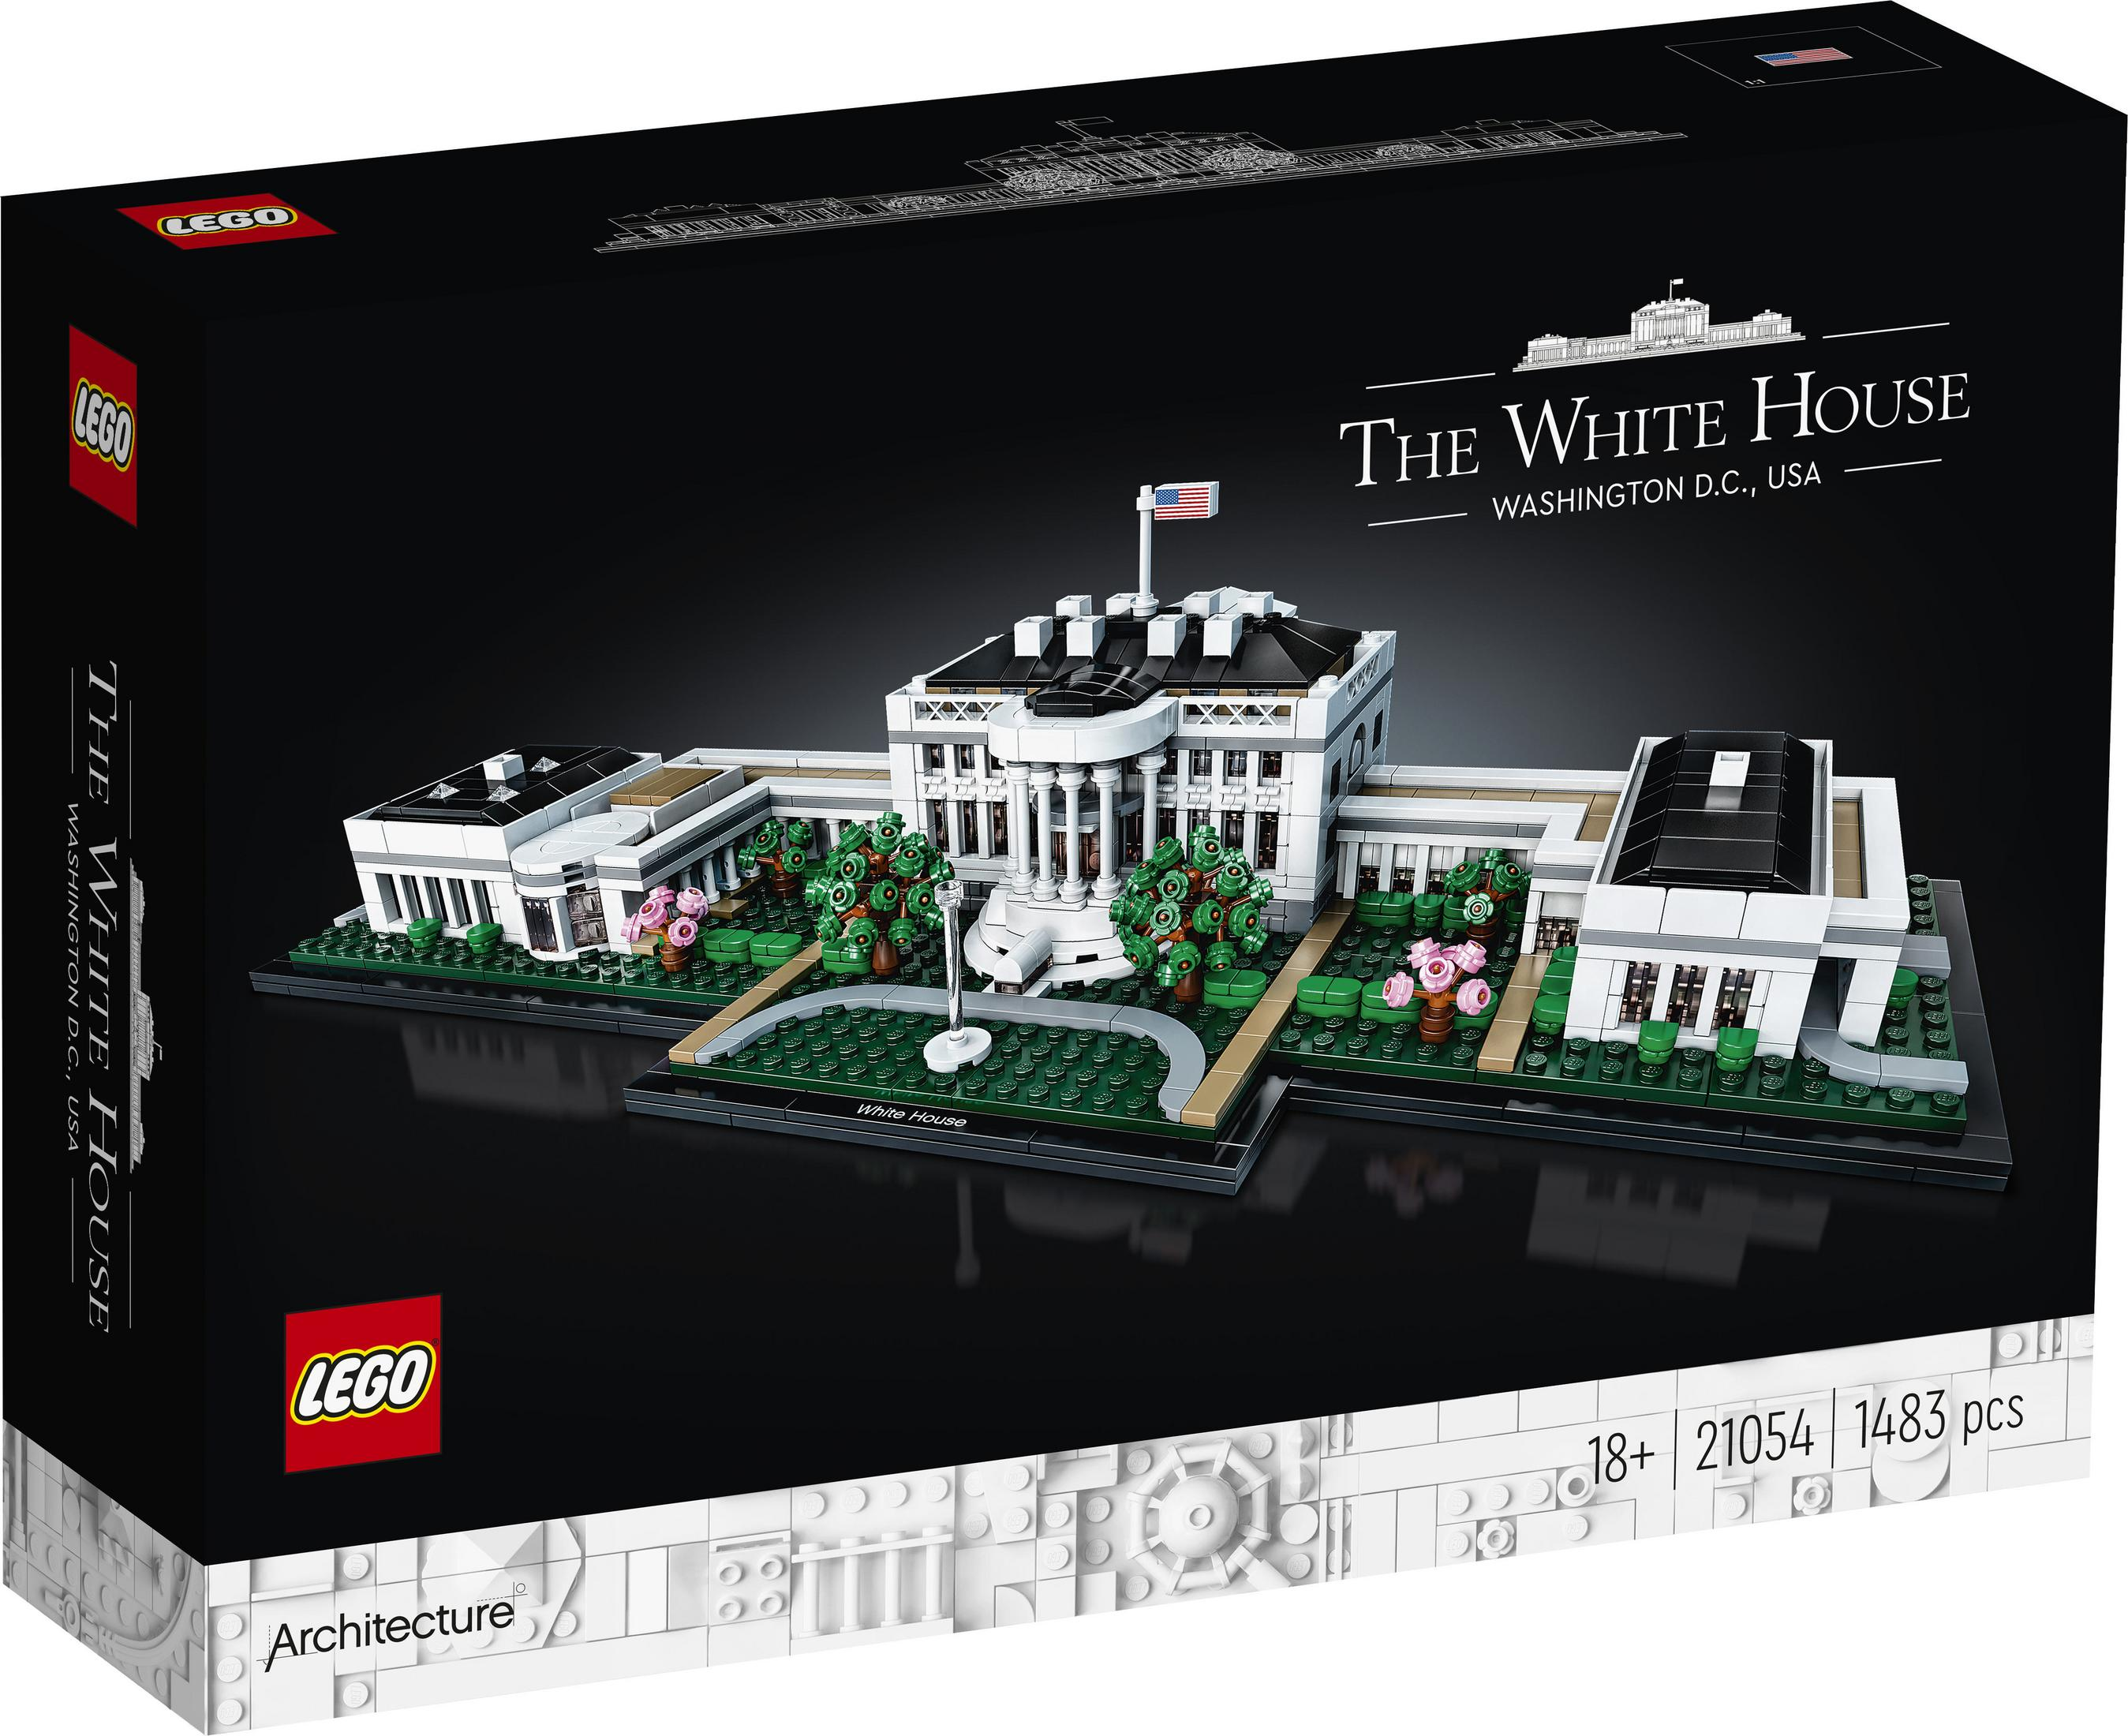 Architecture LEGO HAUS LEGO WEISSE DAS 21054